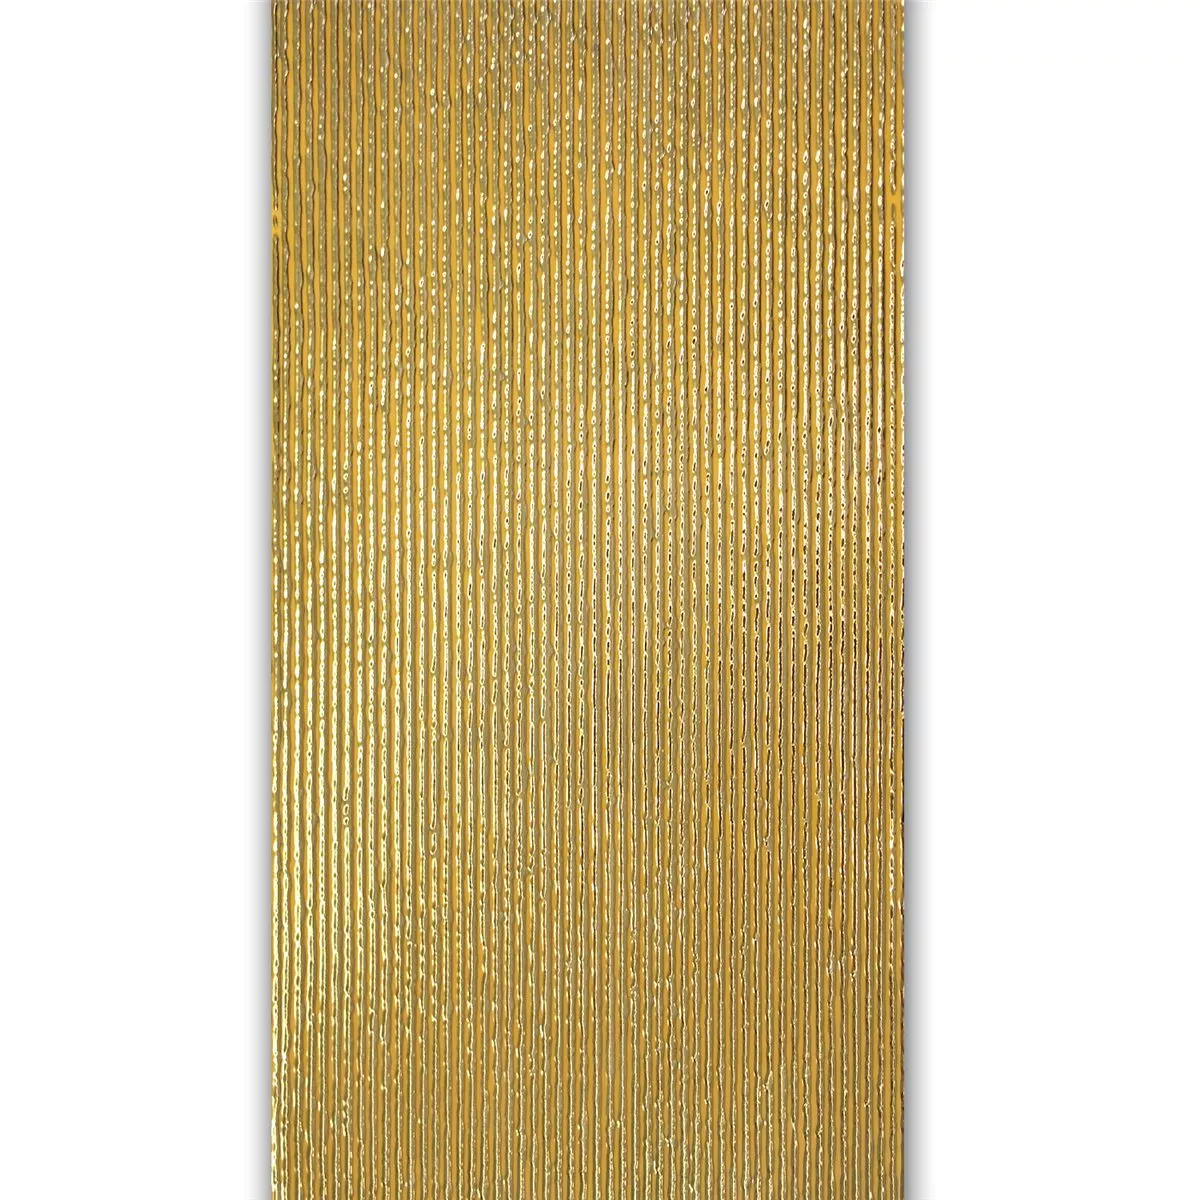 Διακόσμηση Τοίχου Πλακάκι Χρυσός 30x60cm